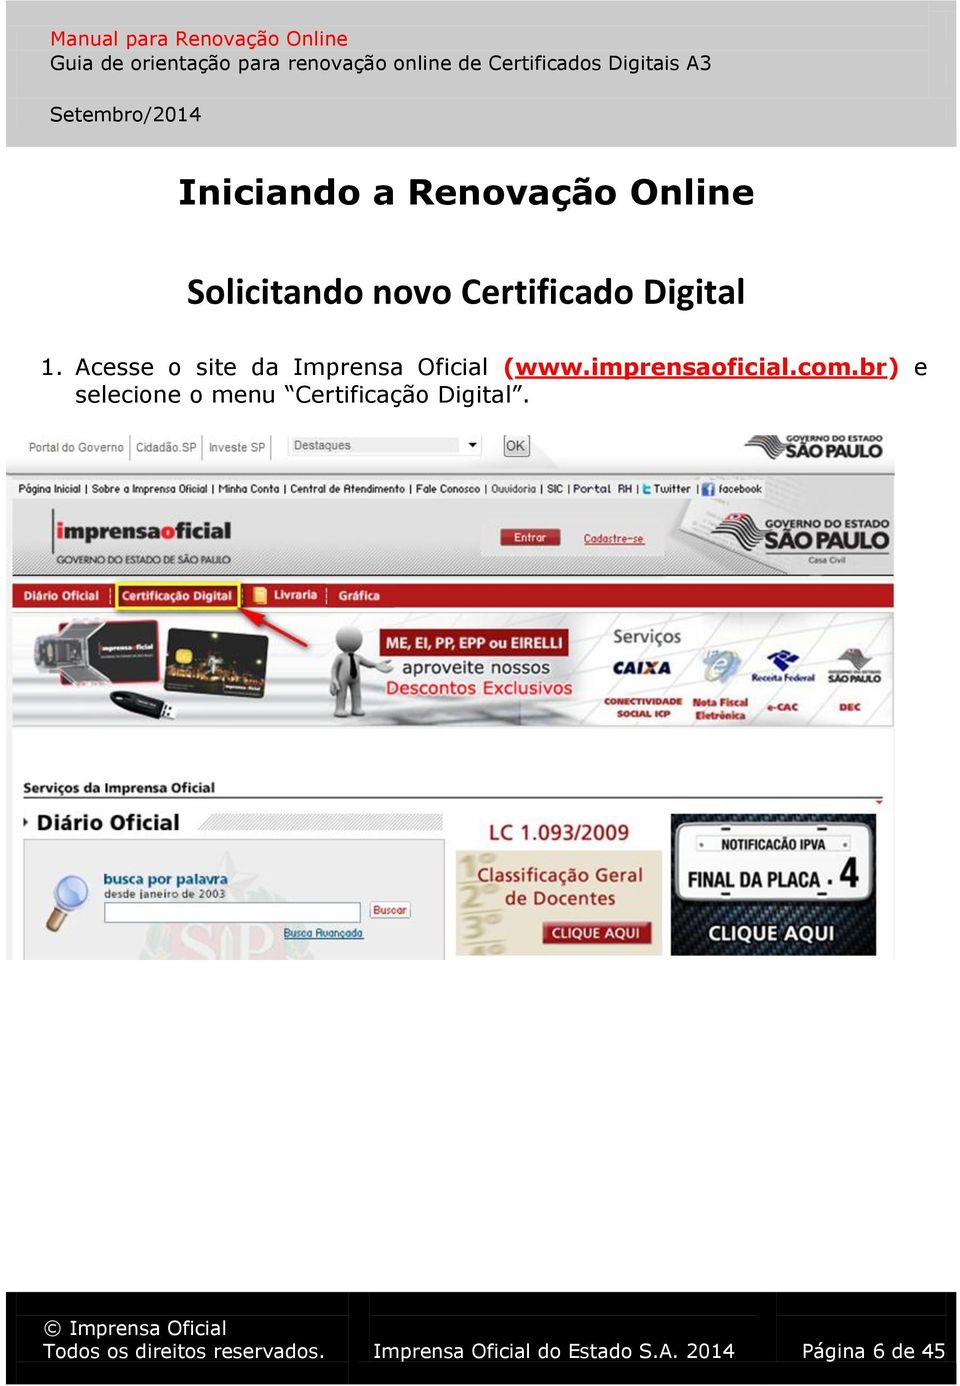 imprensaoficial.com.br) e selecione o menu Certificação Digital.